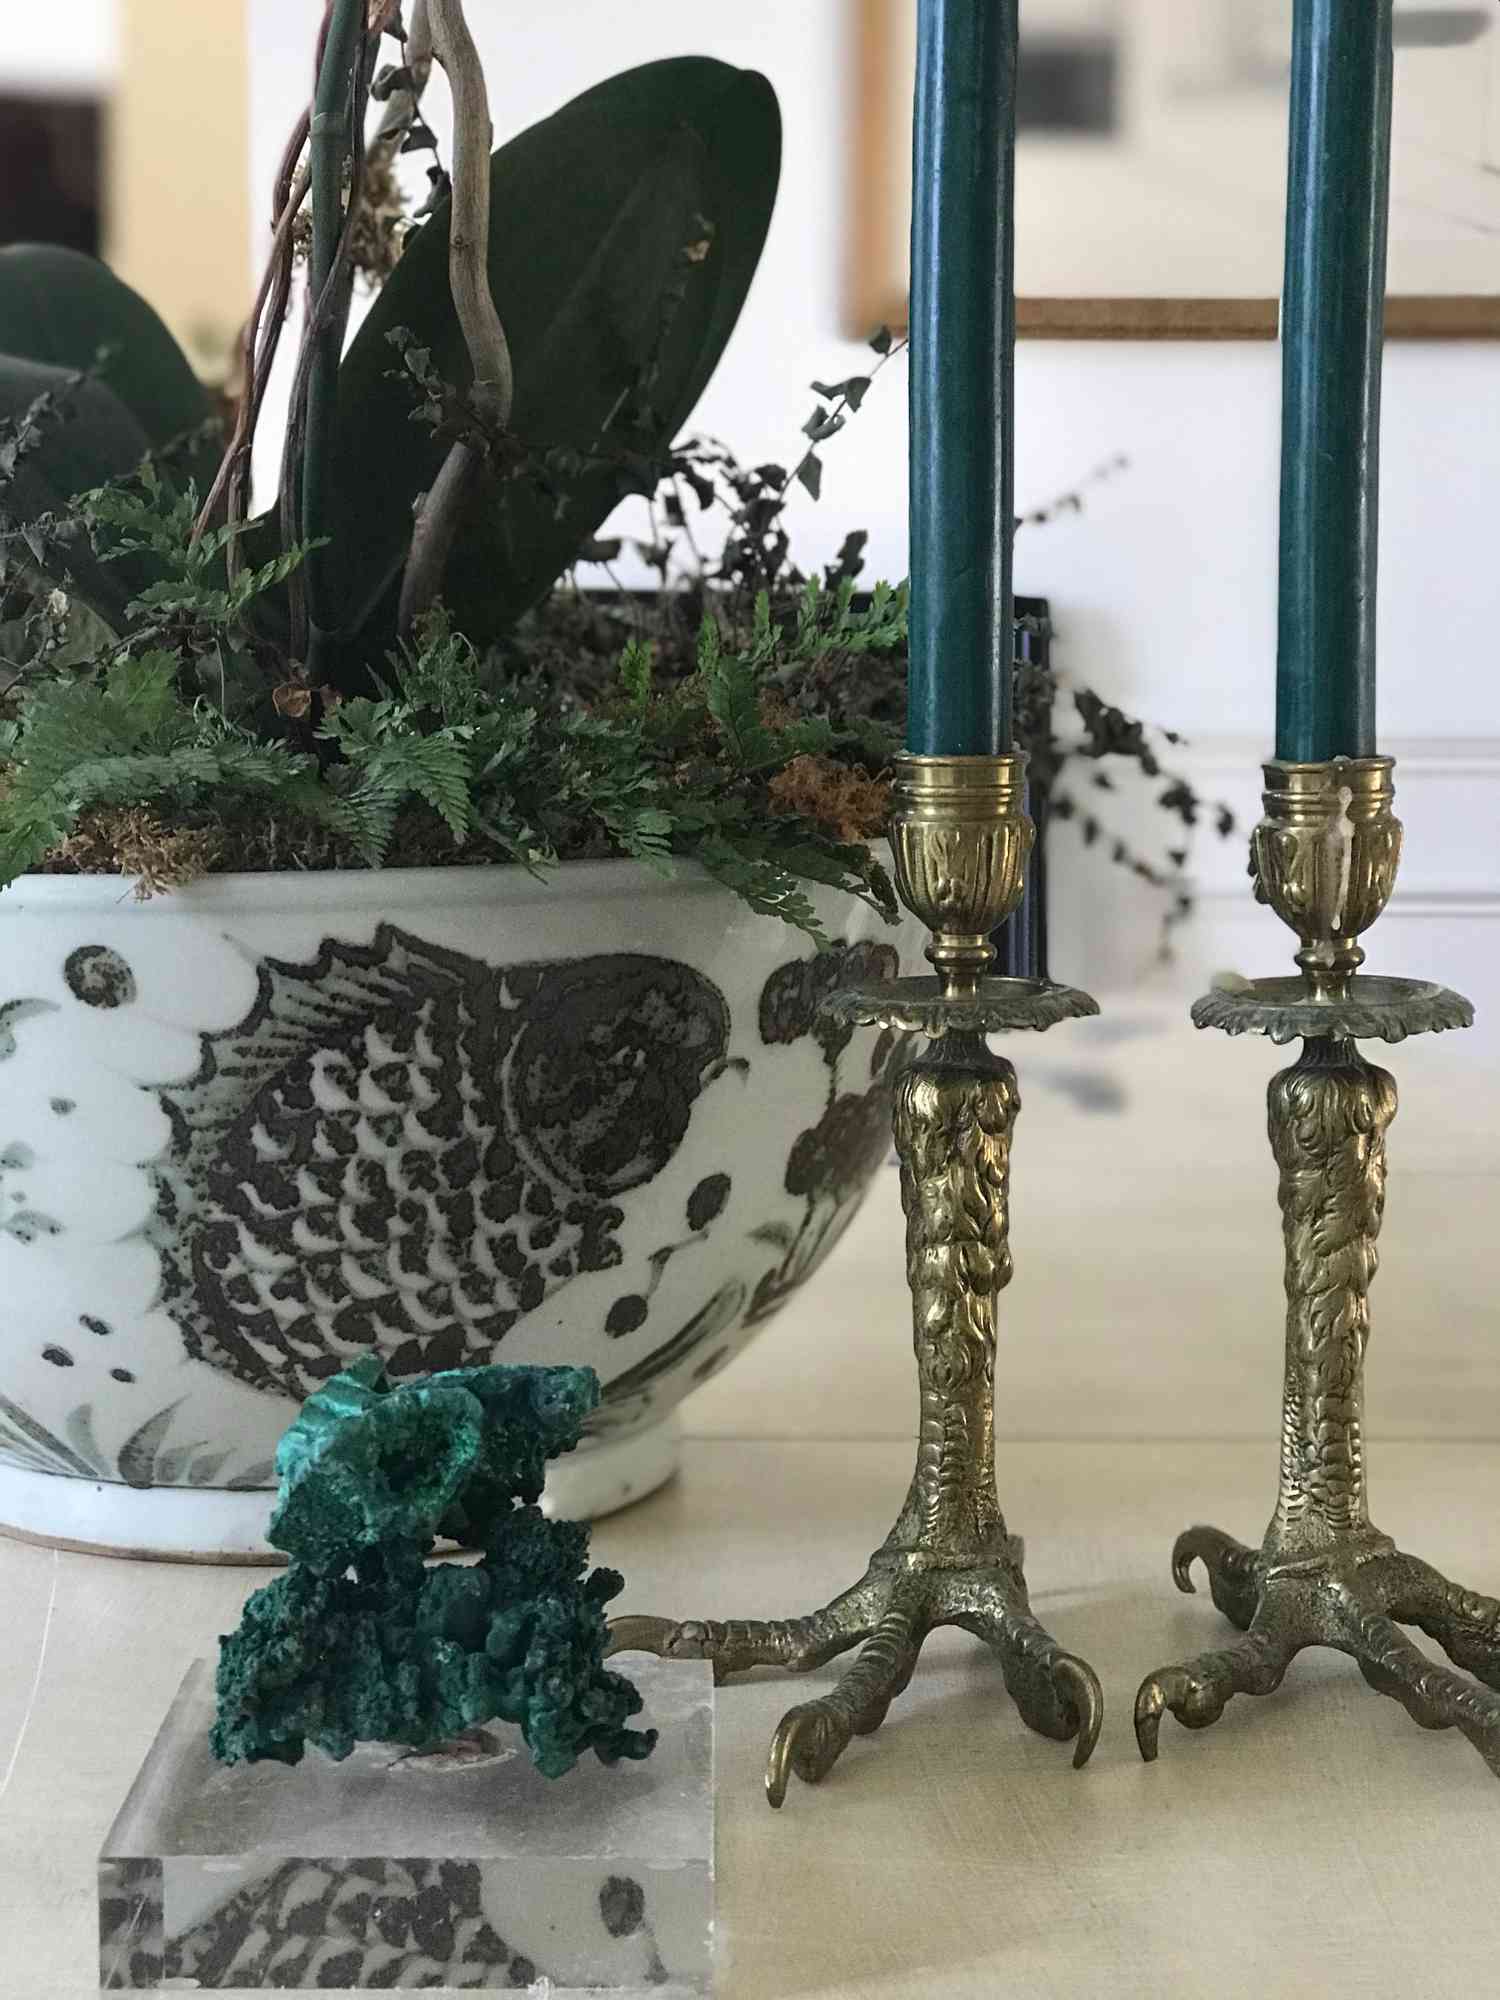 Antiguos candelabros con tallos de pata de pájaro se exhiben cerca de una maceta en casa de la interiorista Victoria Pouncey